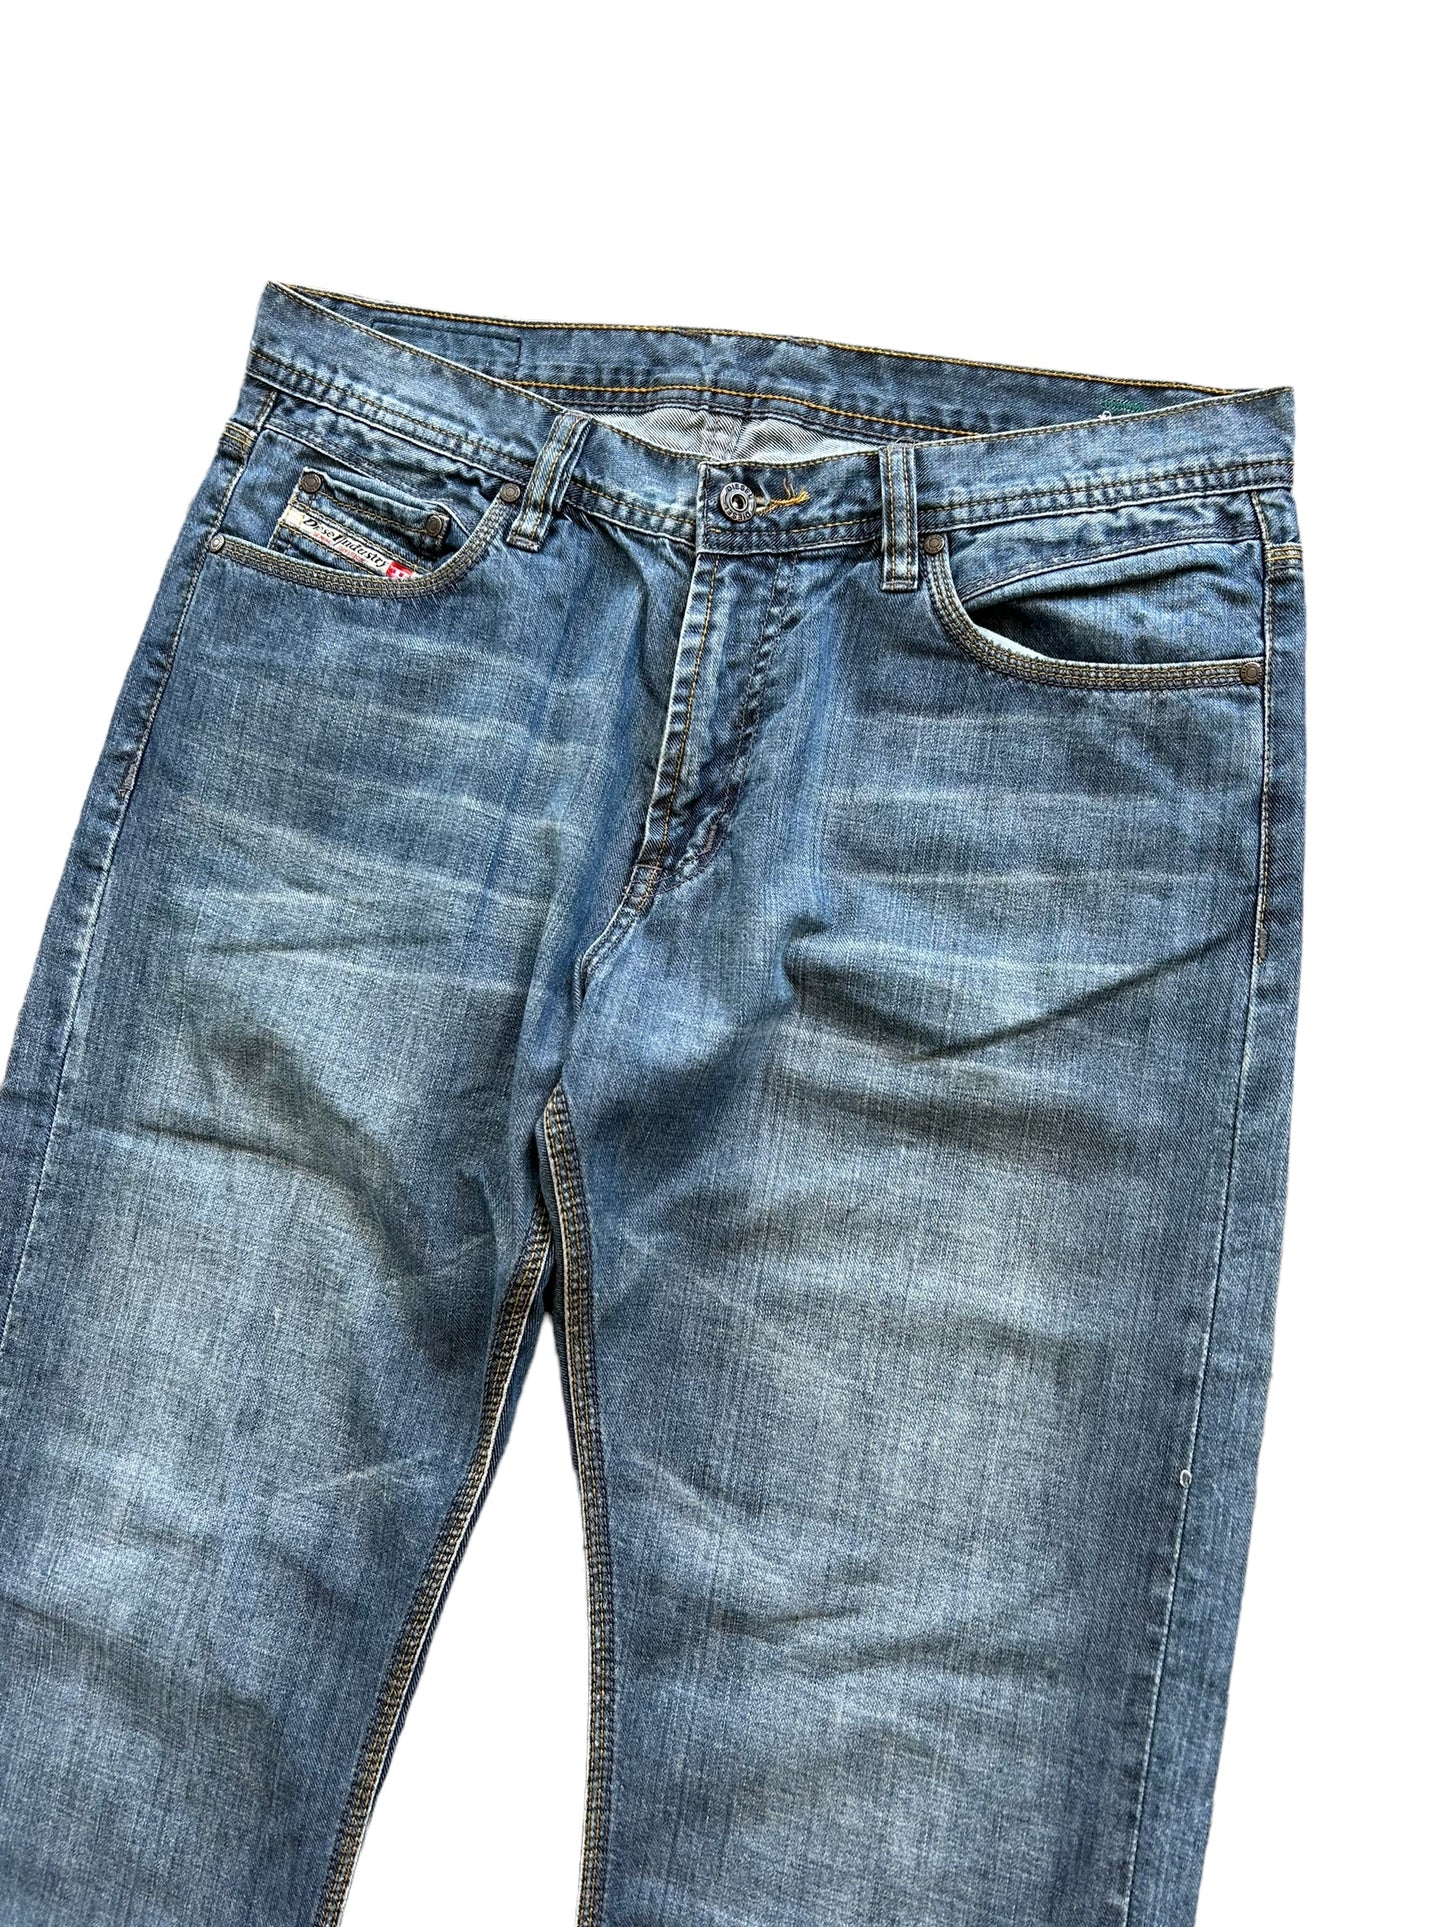 Vintage Diesel Denim Jeans